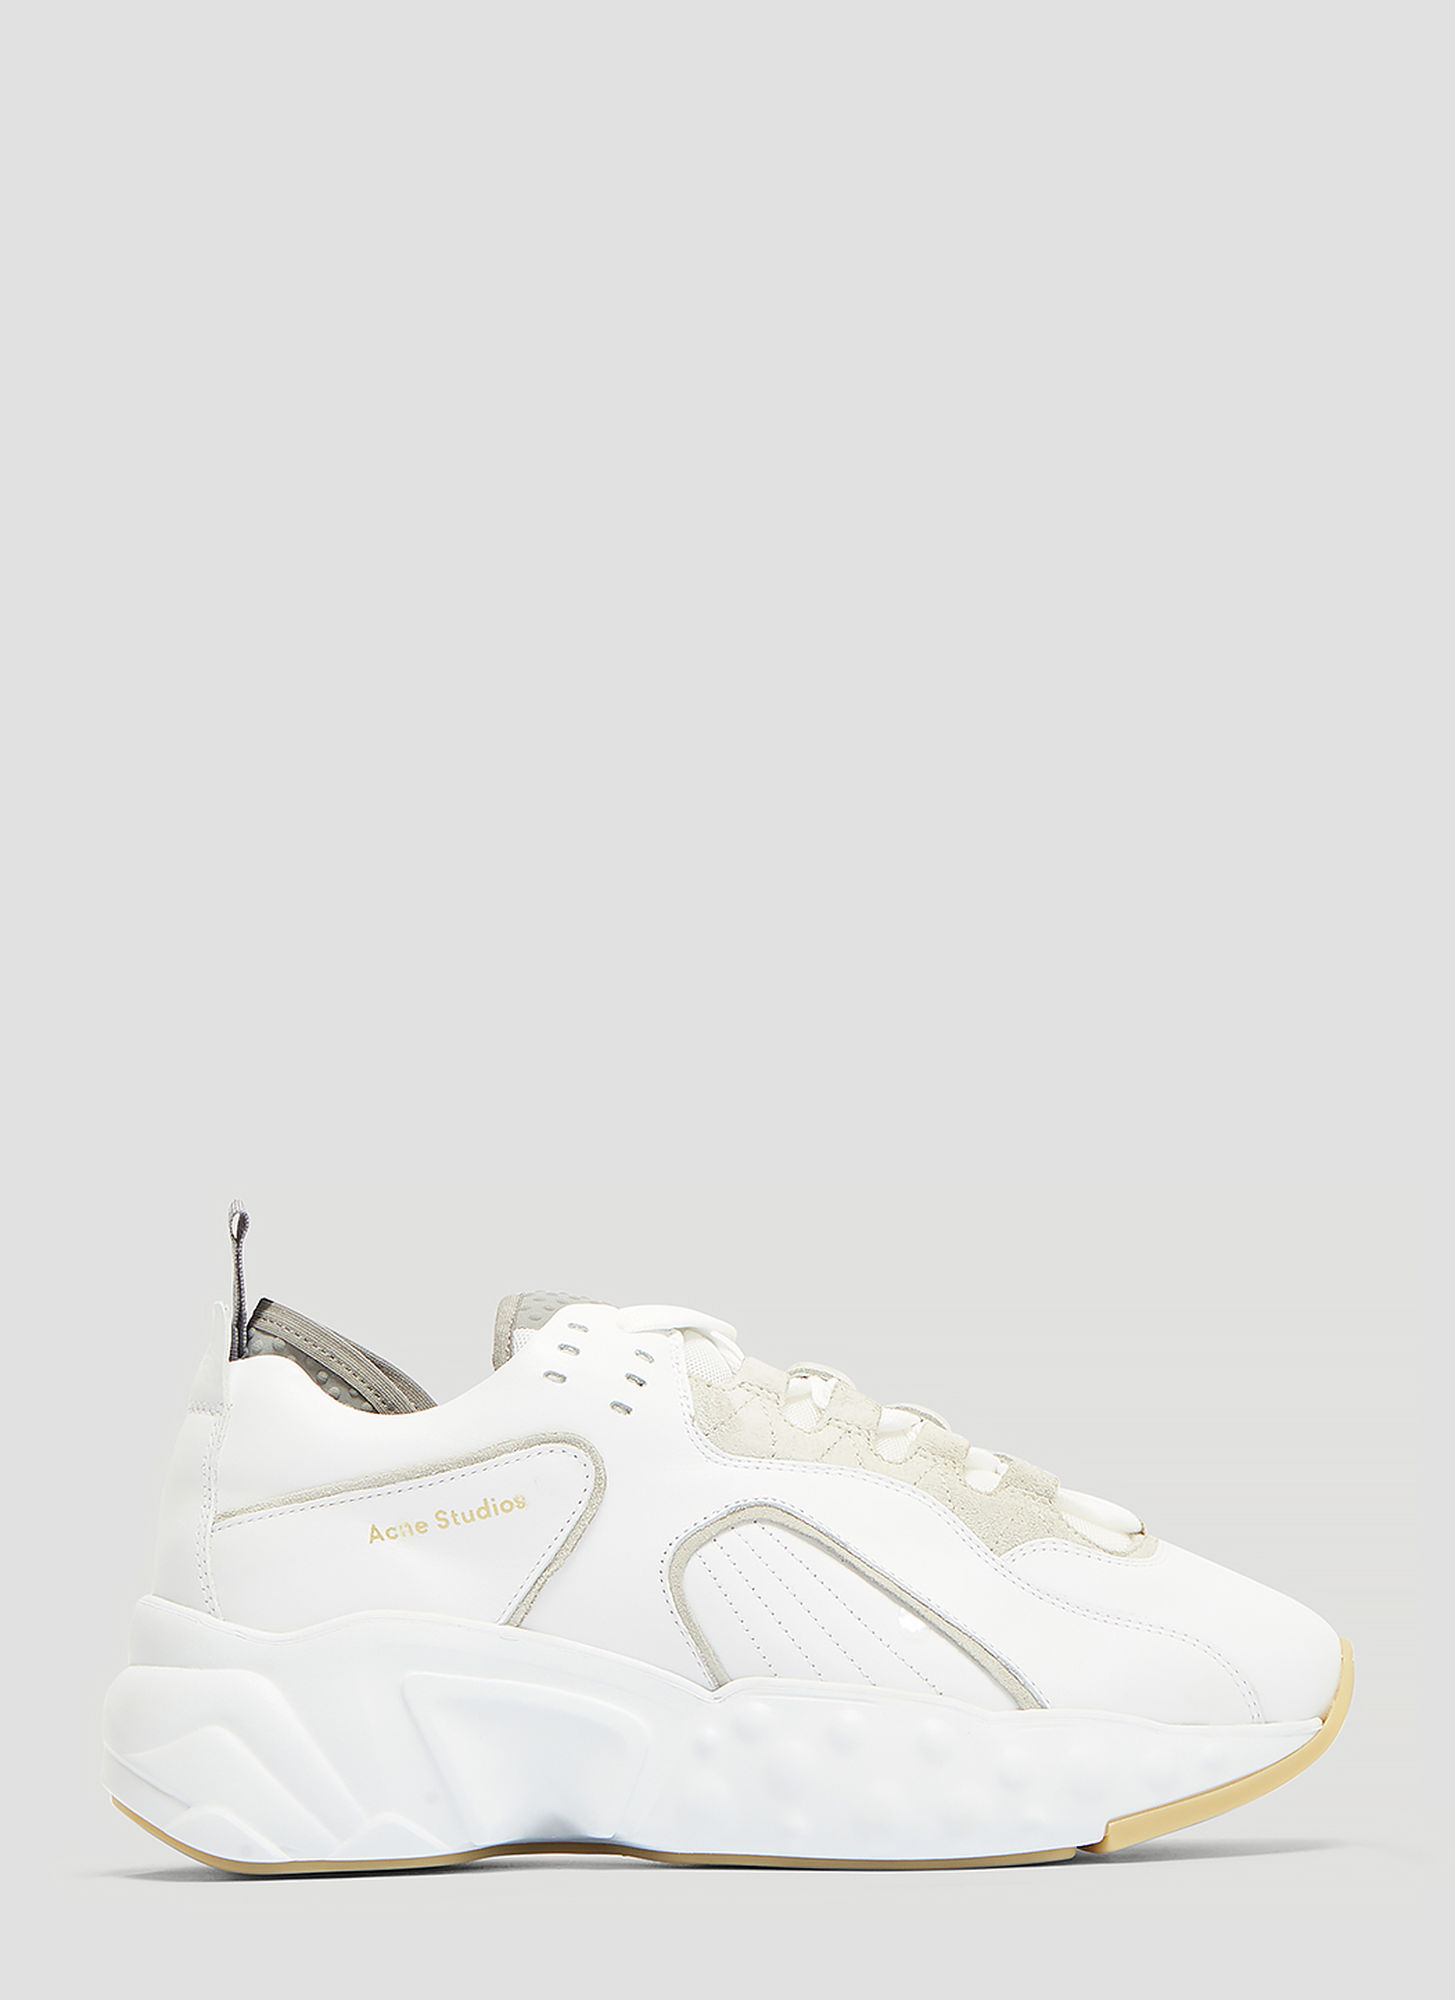 Acne Studios Rockaway Sneakers in White size EU - 43 | The Fashionisto